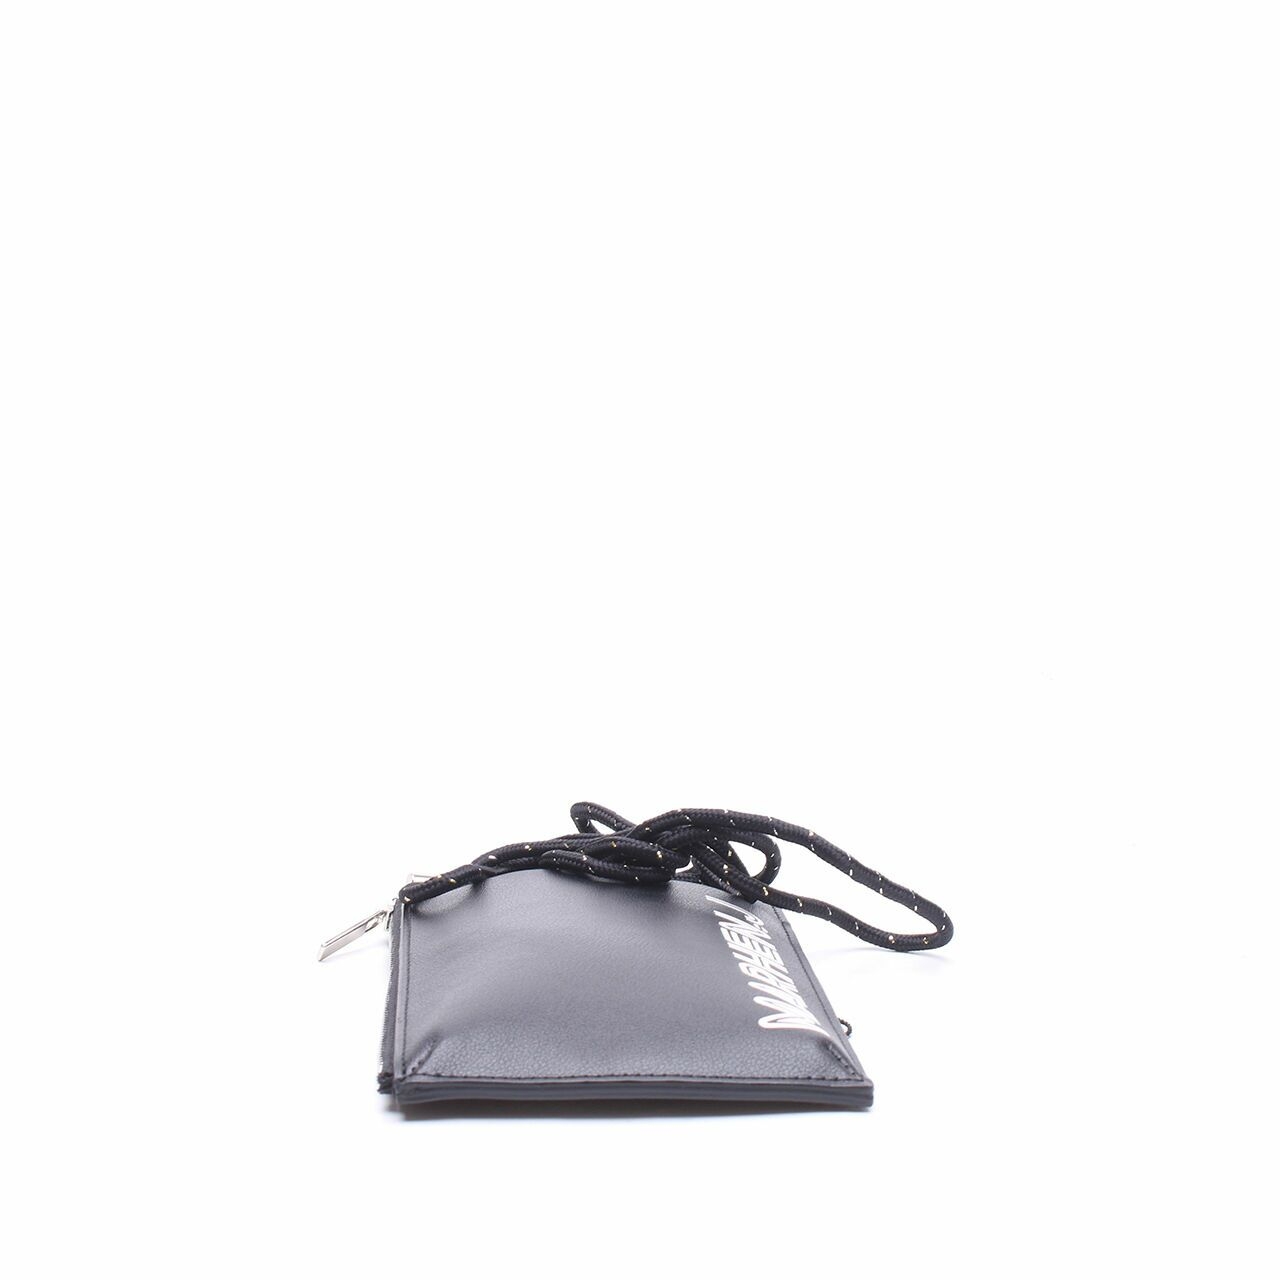 Marhen J Lolly Black Phone Card Case Sling Bag